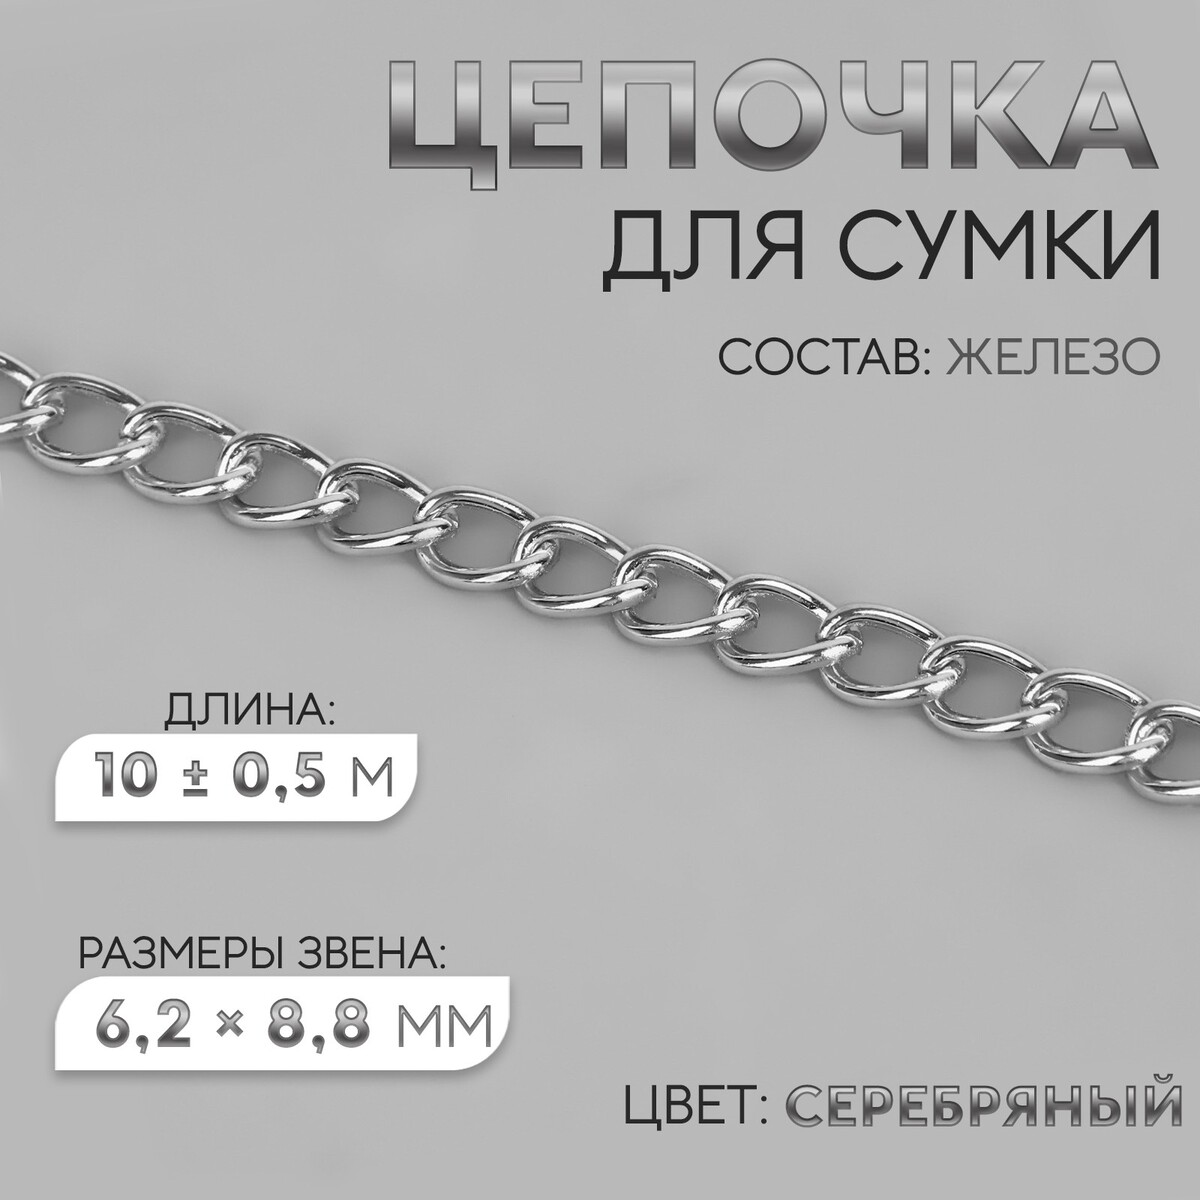 Цепочка для сумки, железная, 6,2 × 8,8 мм, 10 ± 0,5 м, цвет серебряный цепочка для сумки железная 6 2 × 8 8 мм 10 ± 0 5 м серебряный